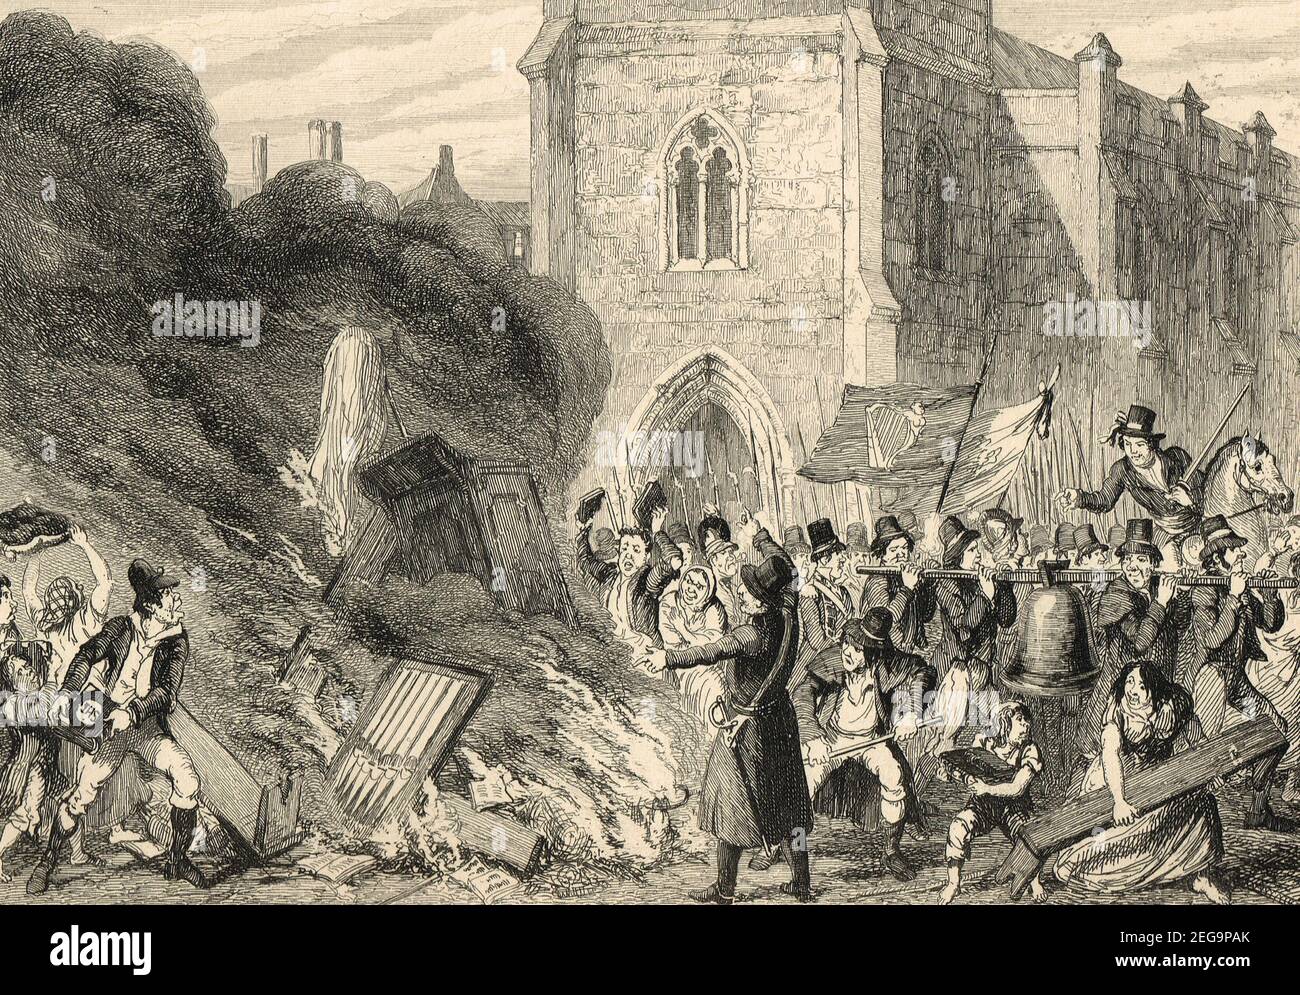 La destruction de l'église à Enniscorthy, un incident présumé lors de la rébellion irlandaise de 1798 Banque D'Images